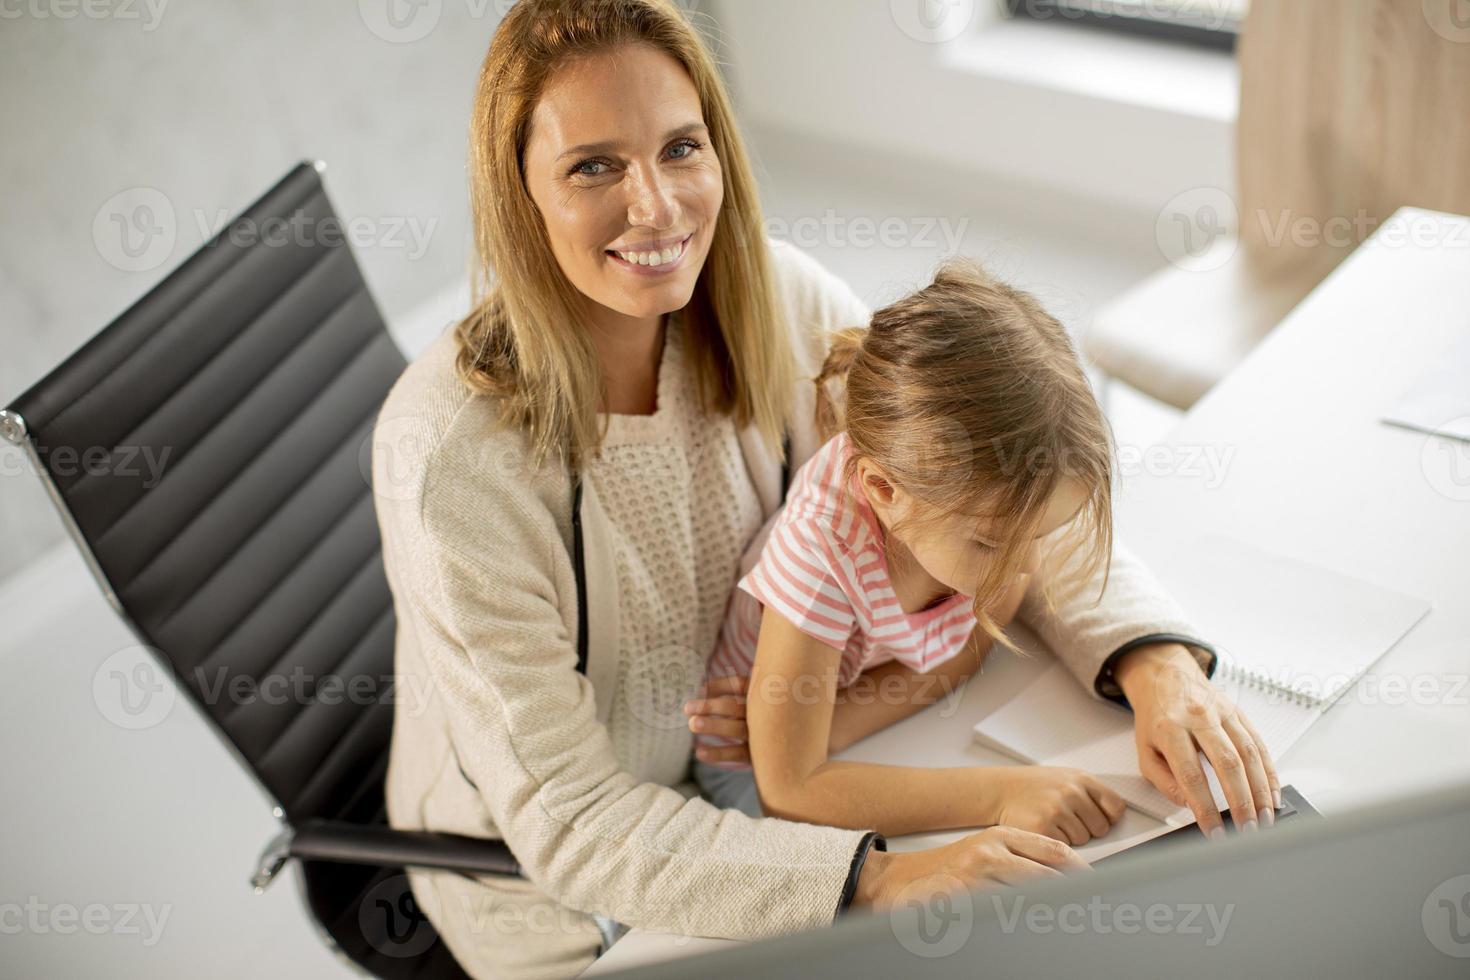 mor och dotter på kontoret foto